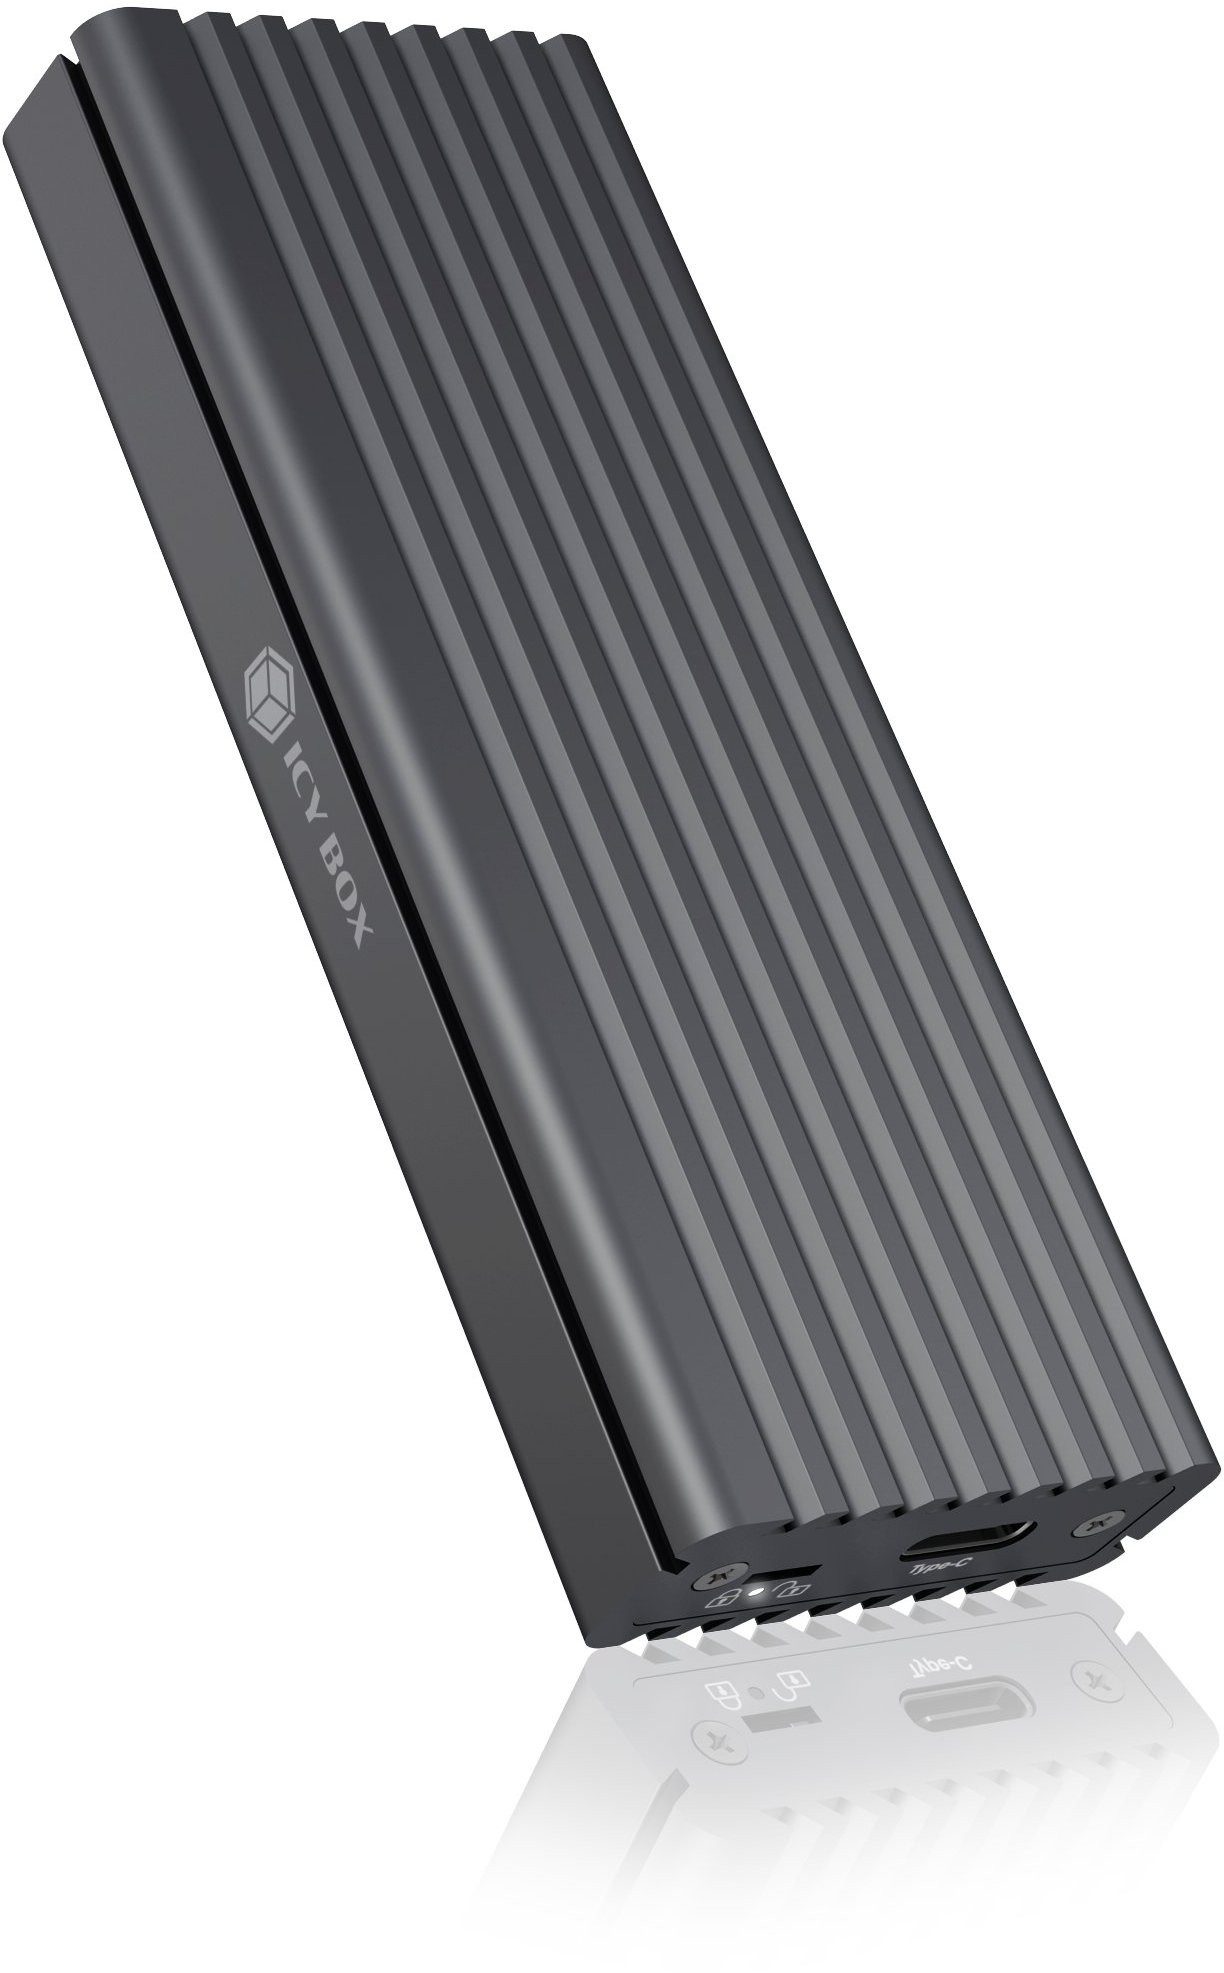 Festplatten-Gehäuse Gehäuse für 1x M.2 NVMe & SATA SSD mit USB Type-C Anschluss, Hochwertiges Aluminium